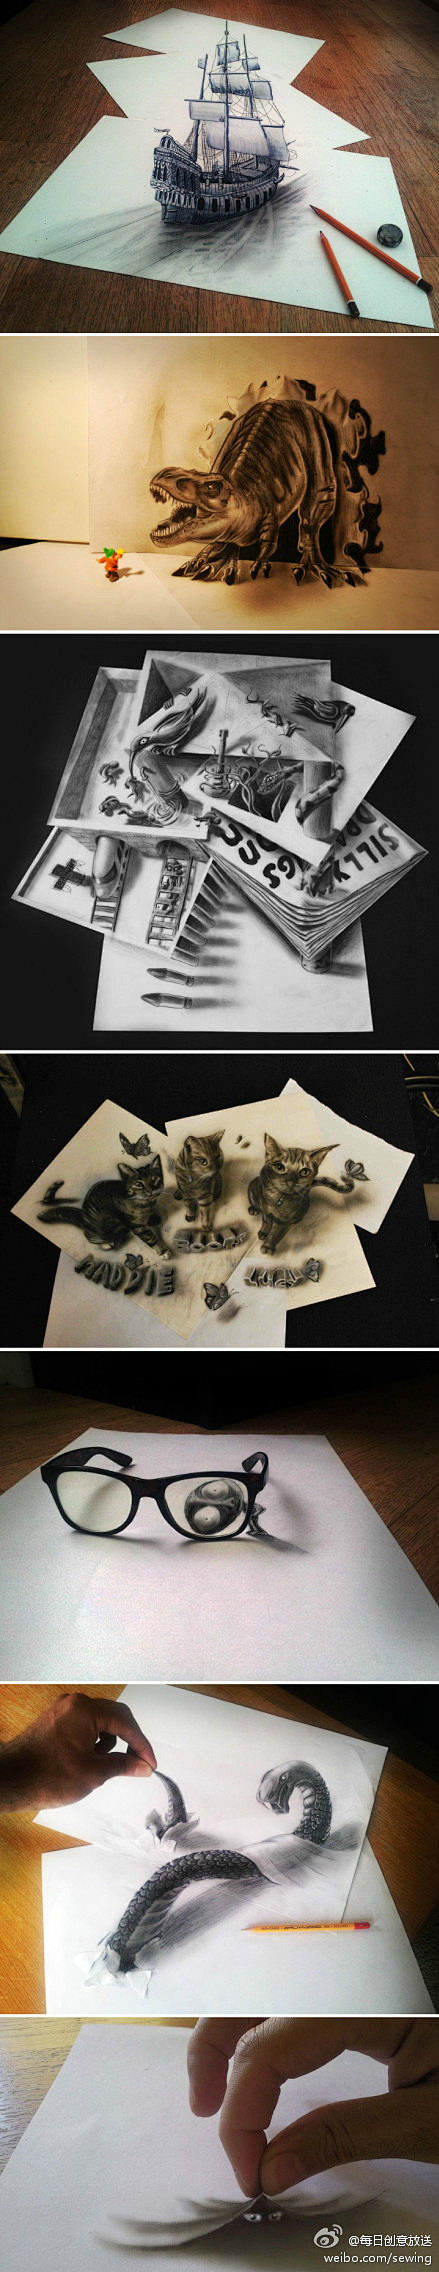 又见惊艳的3D铅笔涂鸦画，来自荷兰人Ra...